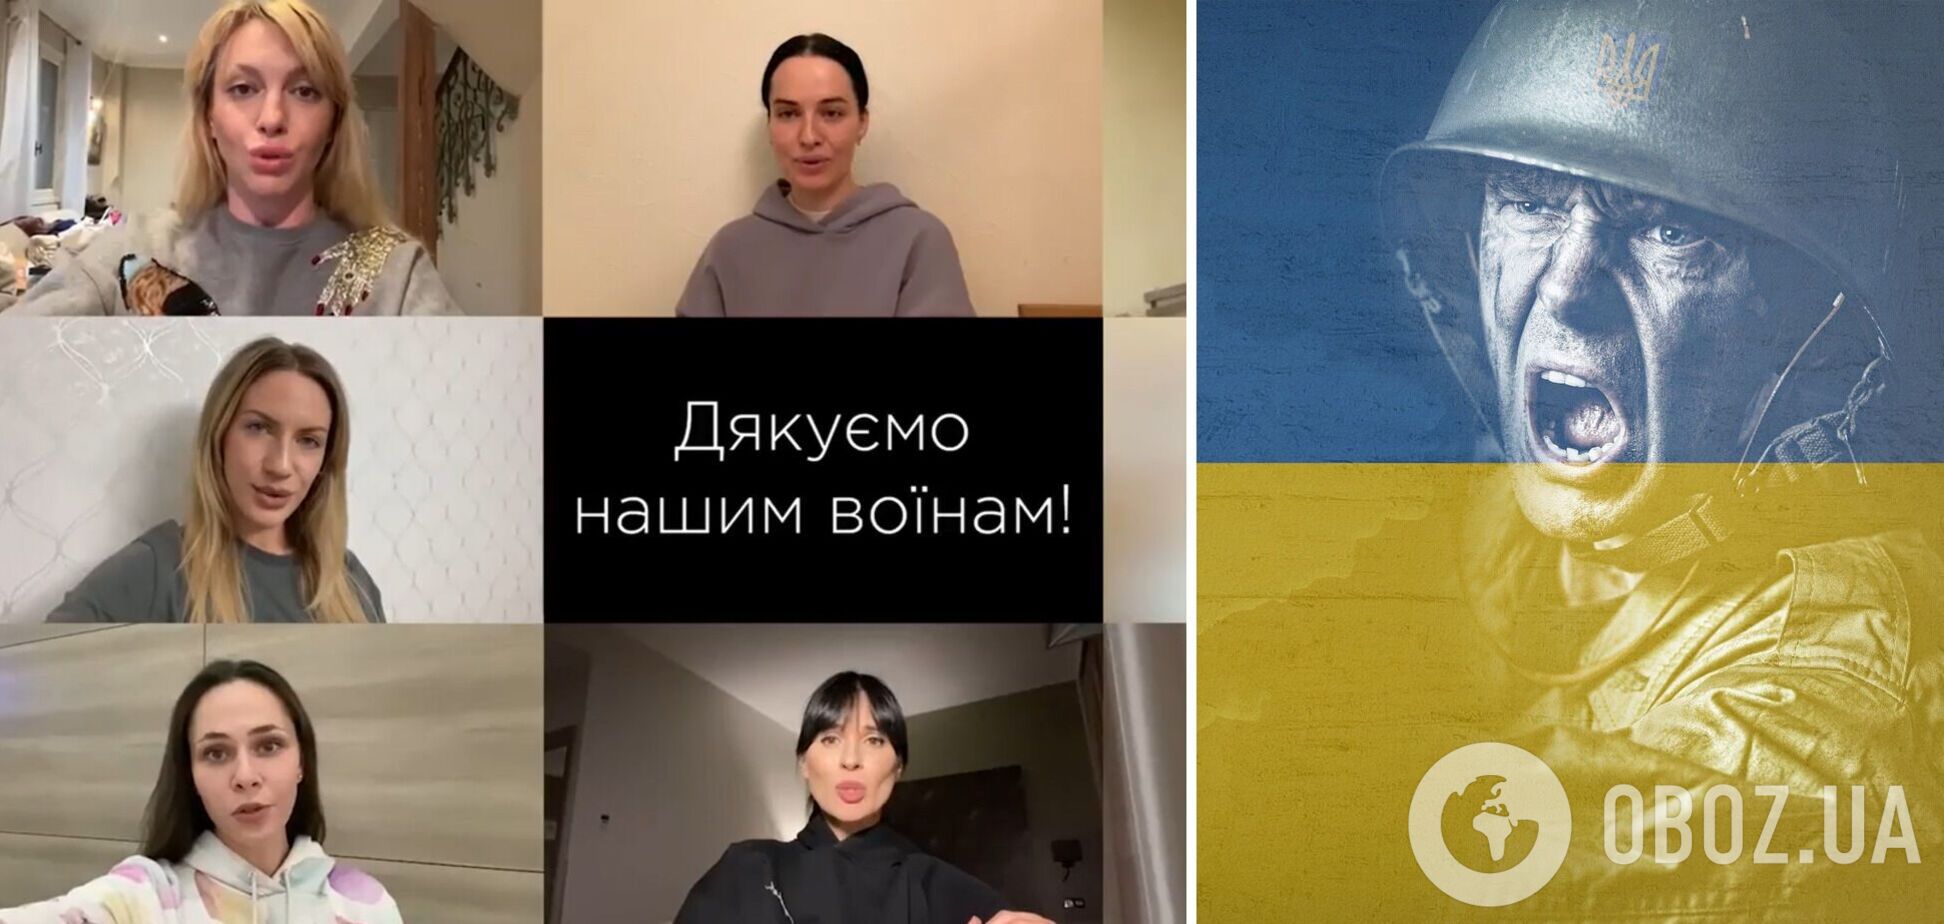 Українські зірки записали звернення до воїнів на передовій: молюся за тебе, вірю в тебе, пишаюся тобою